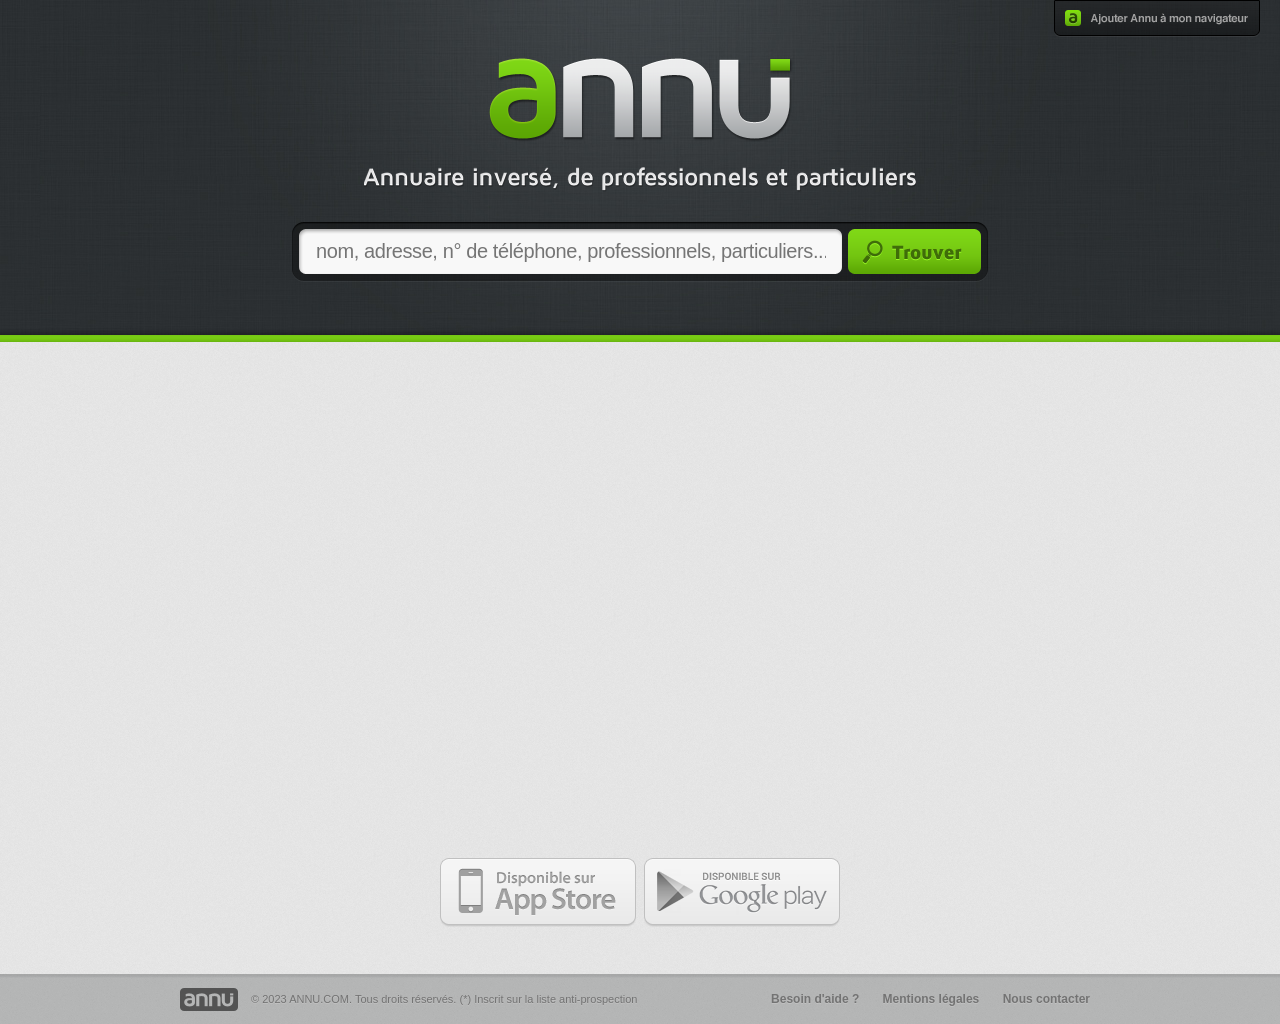 annu.com